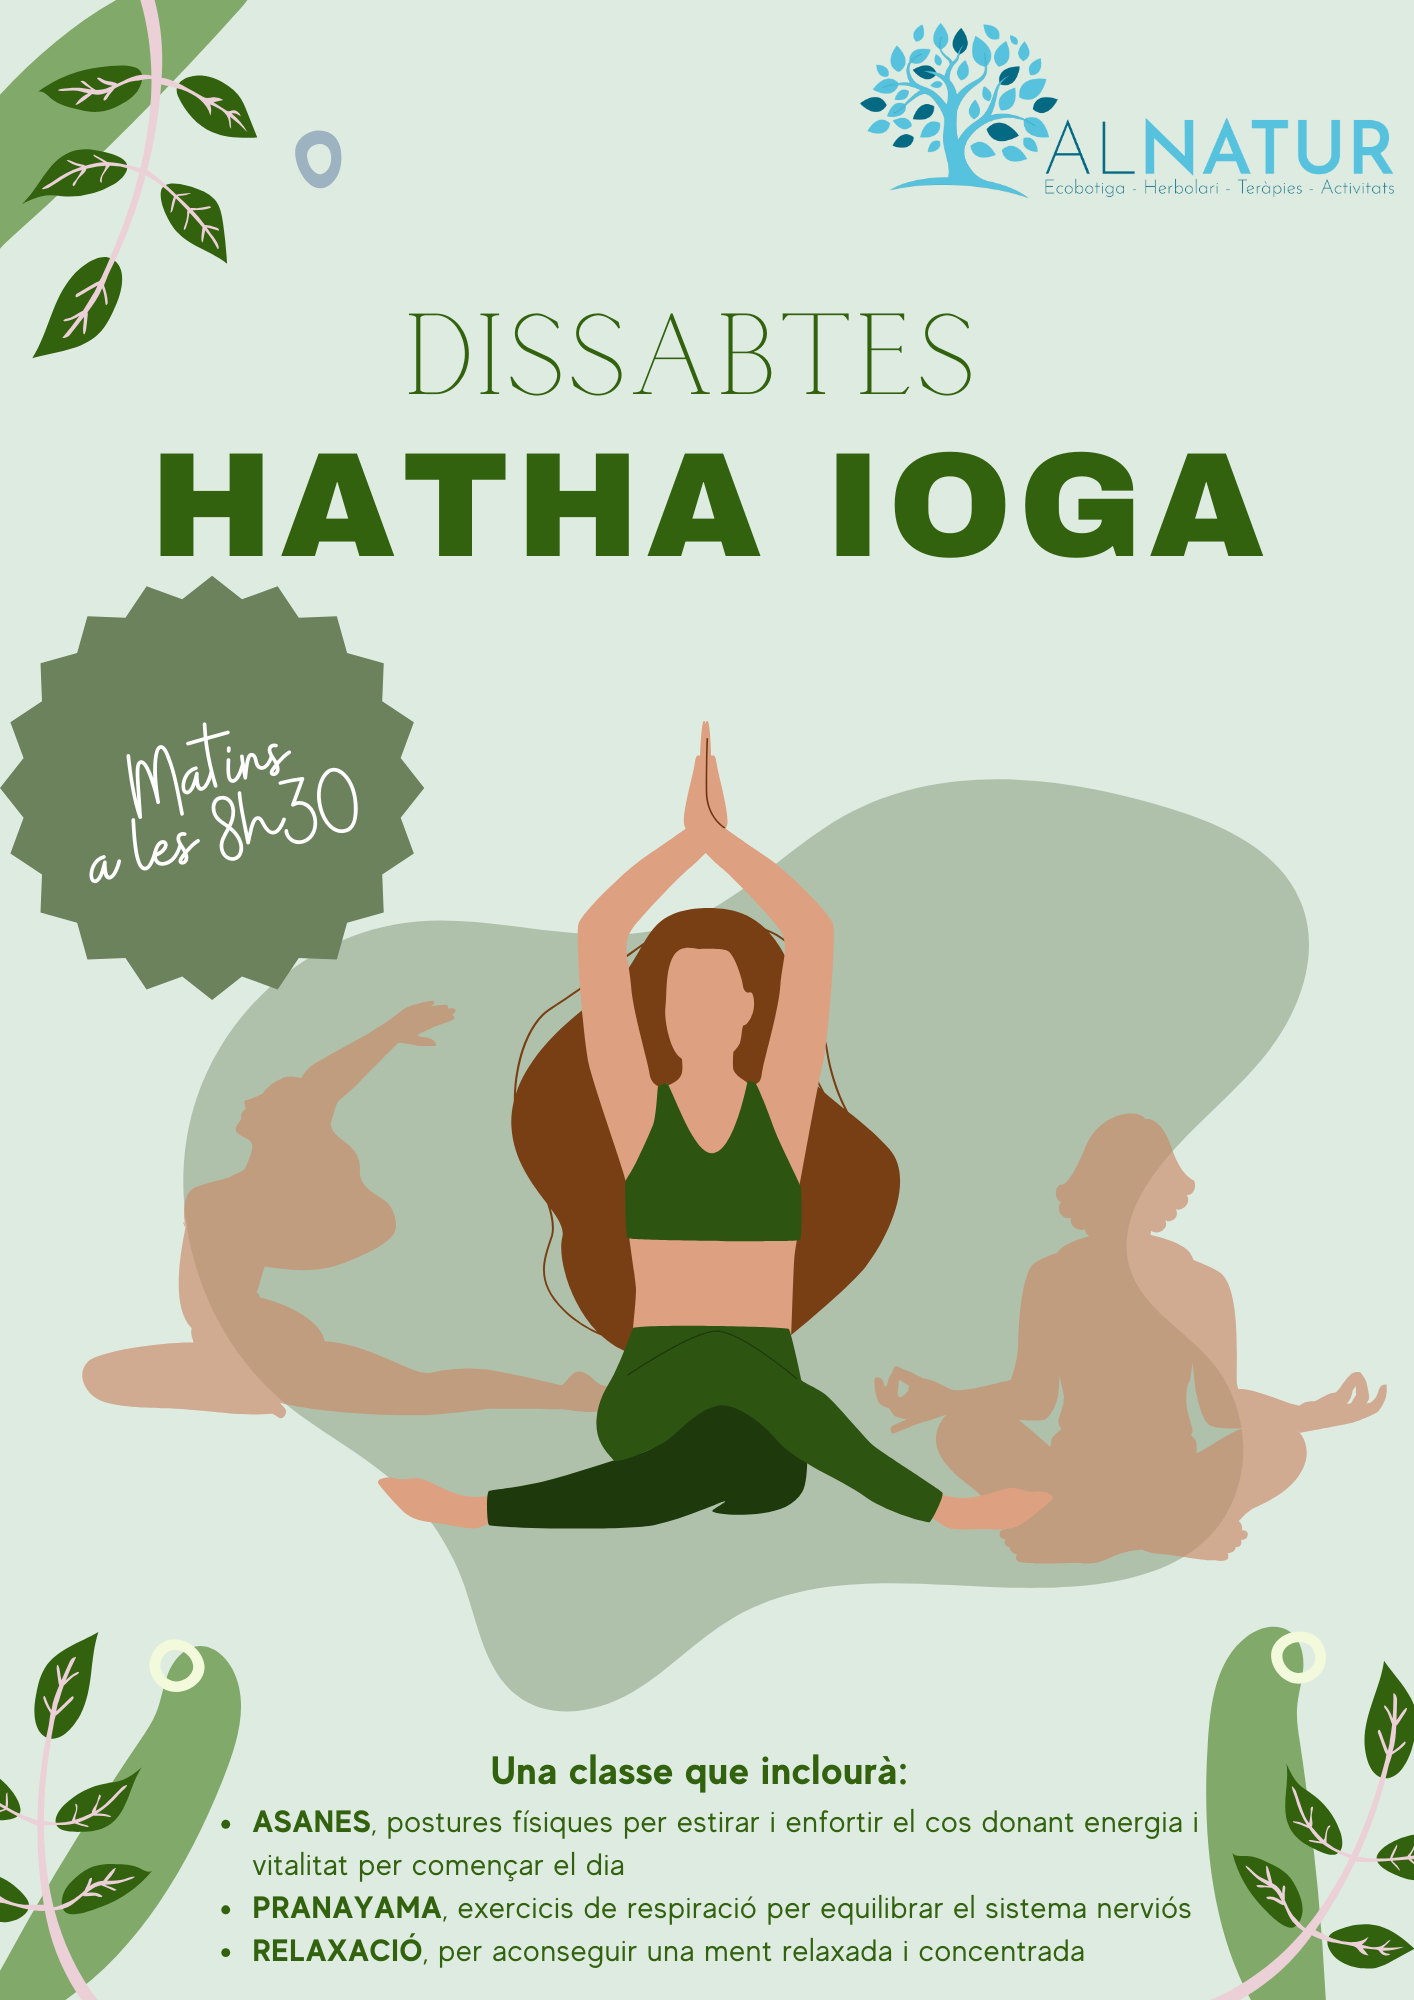 Nuevo grupo de Hatha Yoga los sábados de 8h30 a 9h30